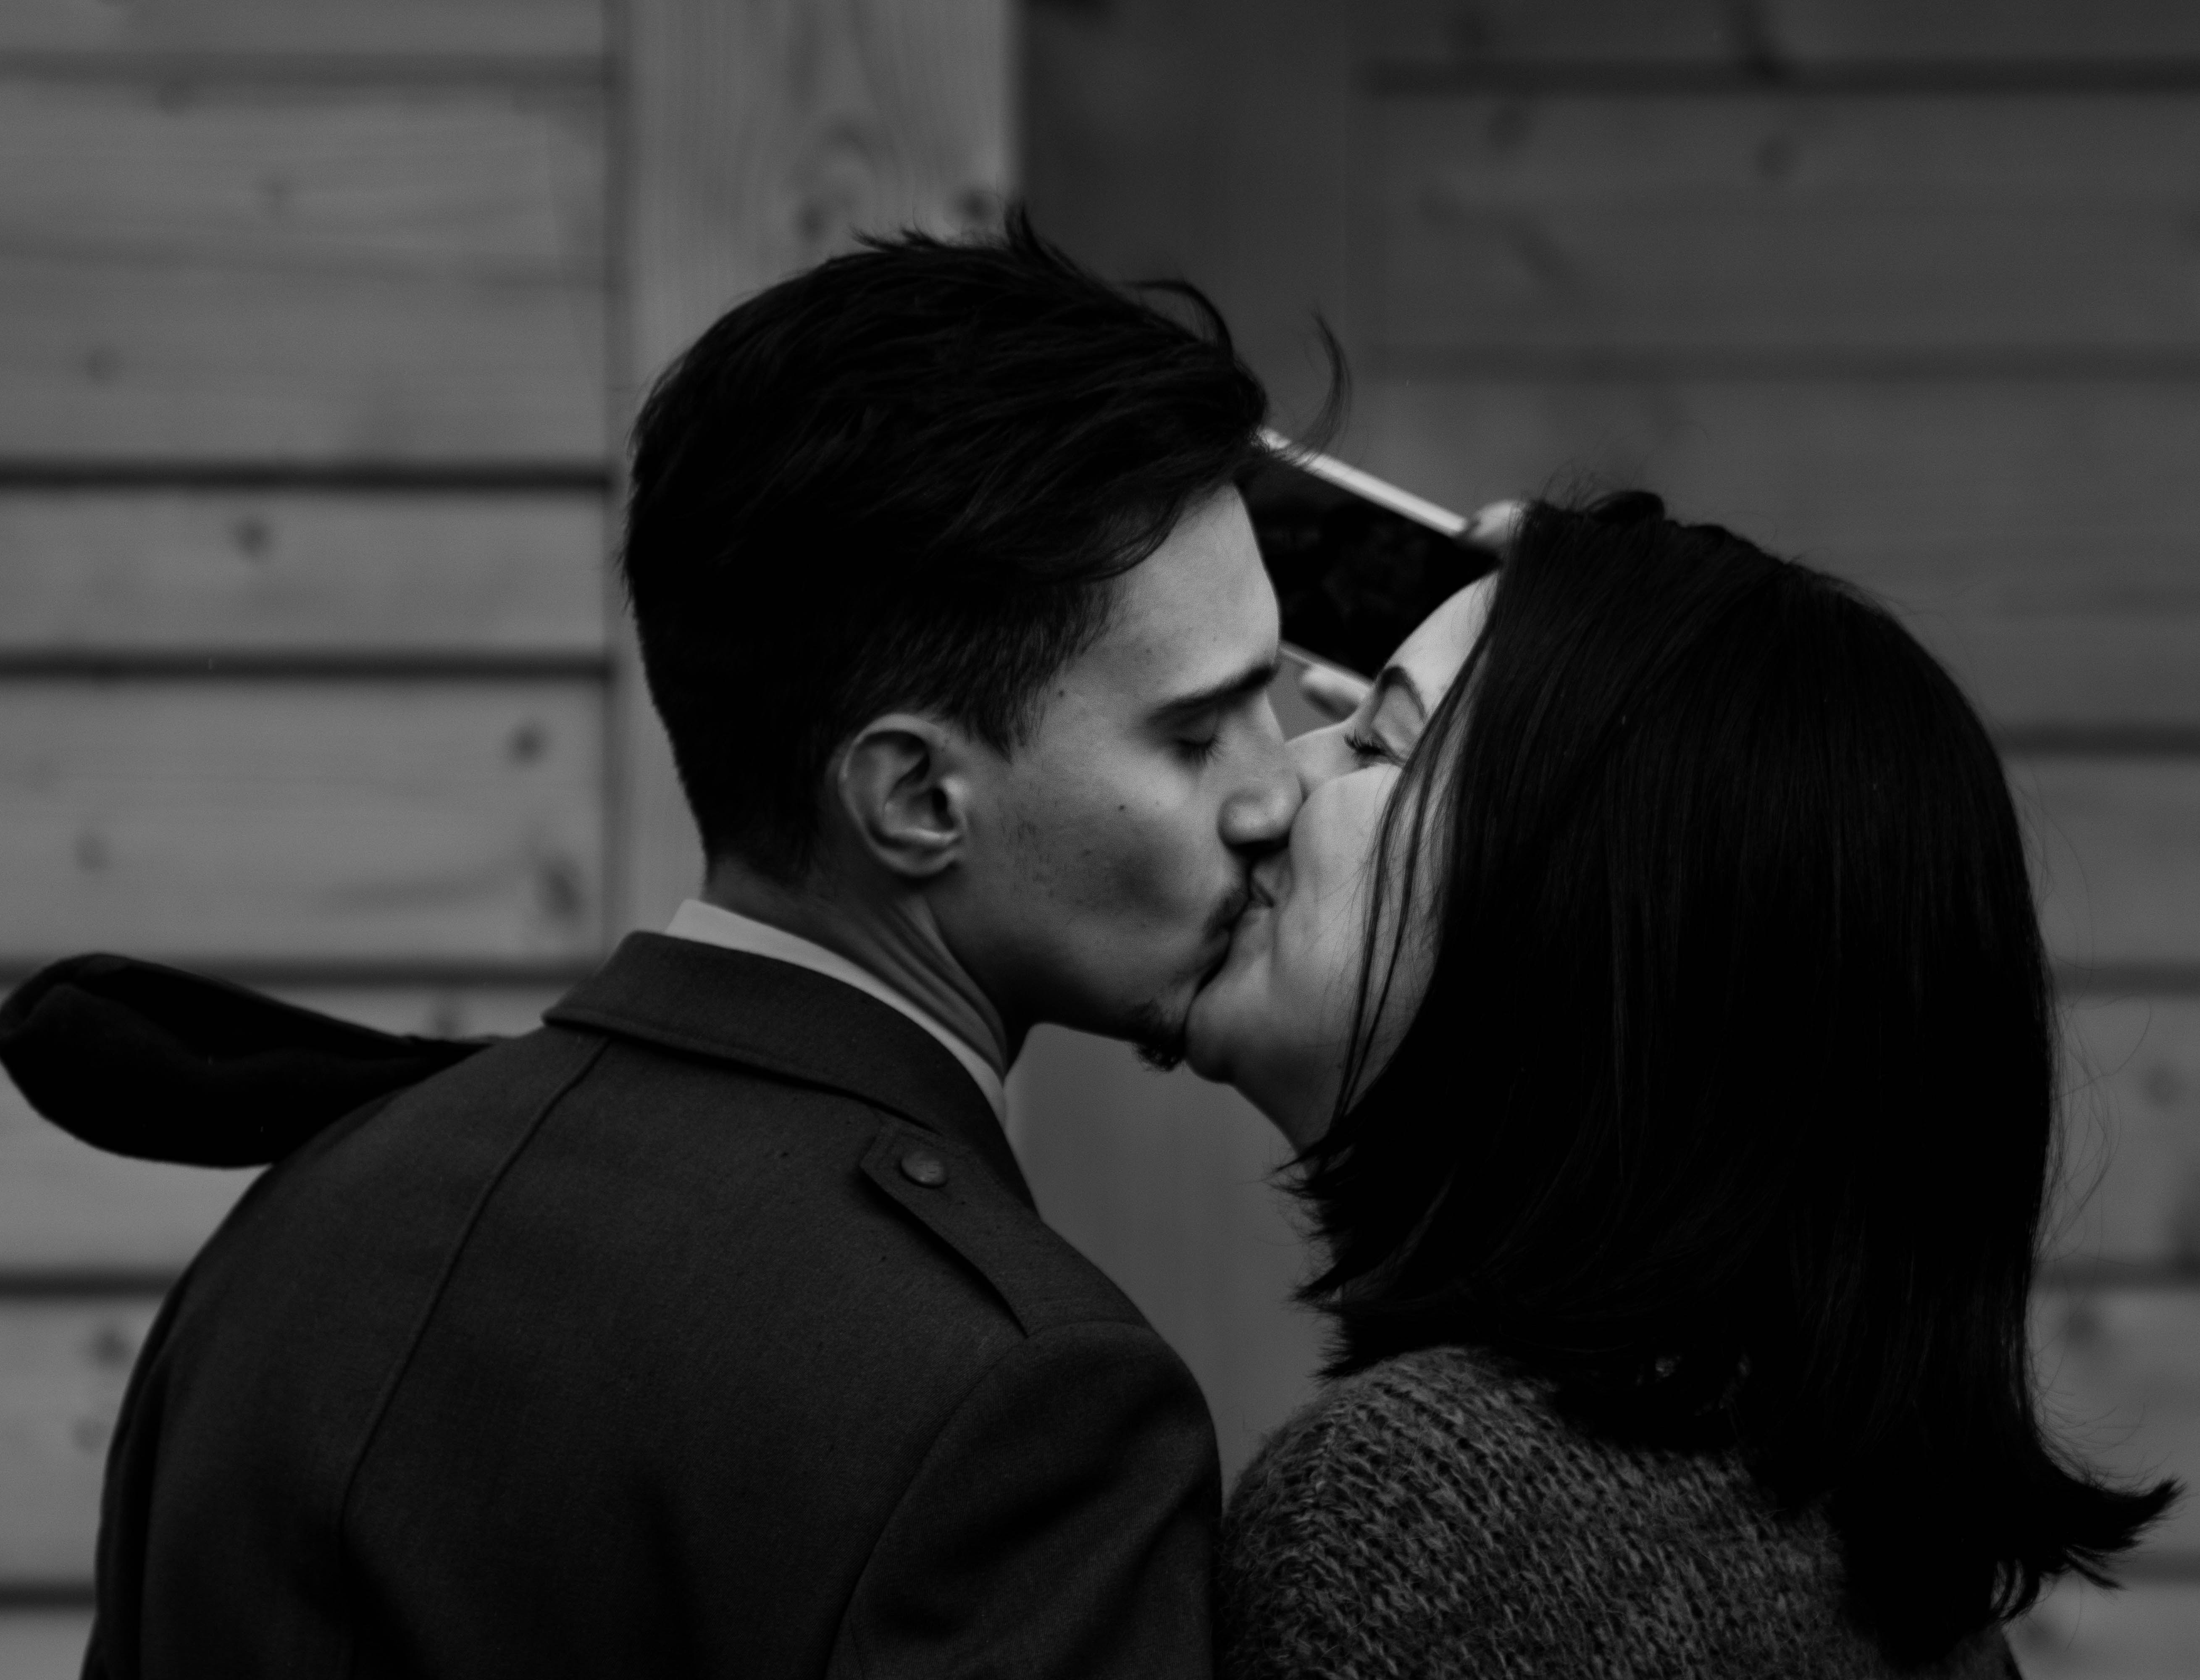 через поцелуй мужчины-определяется его характер...а вы не знали?))